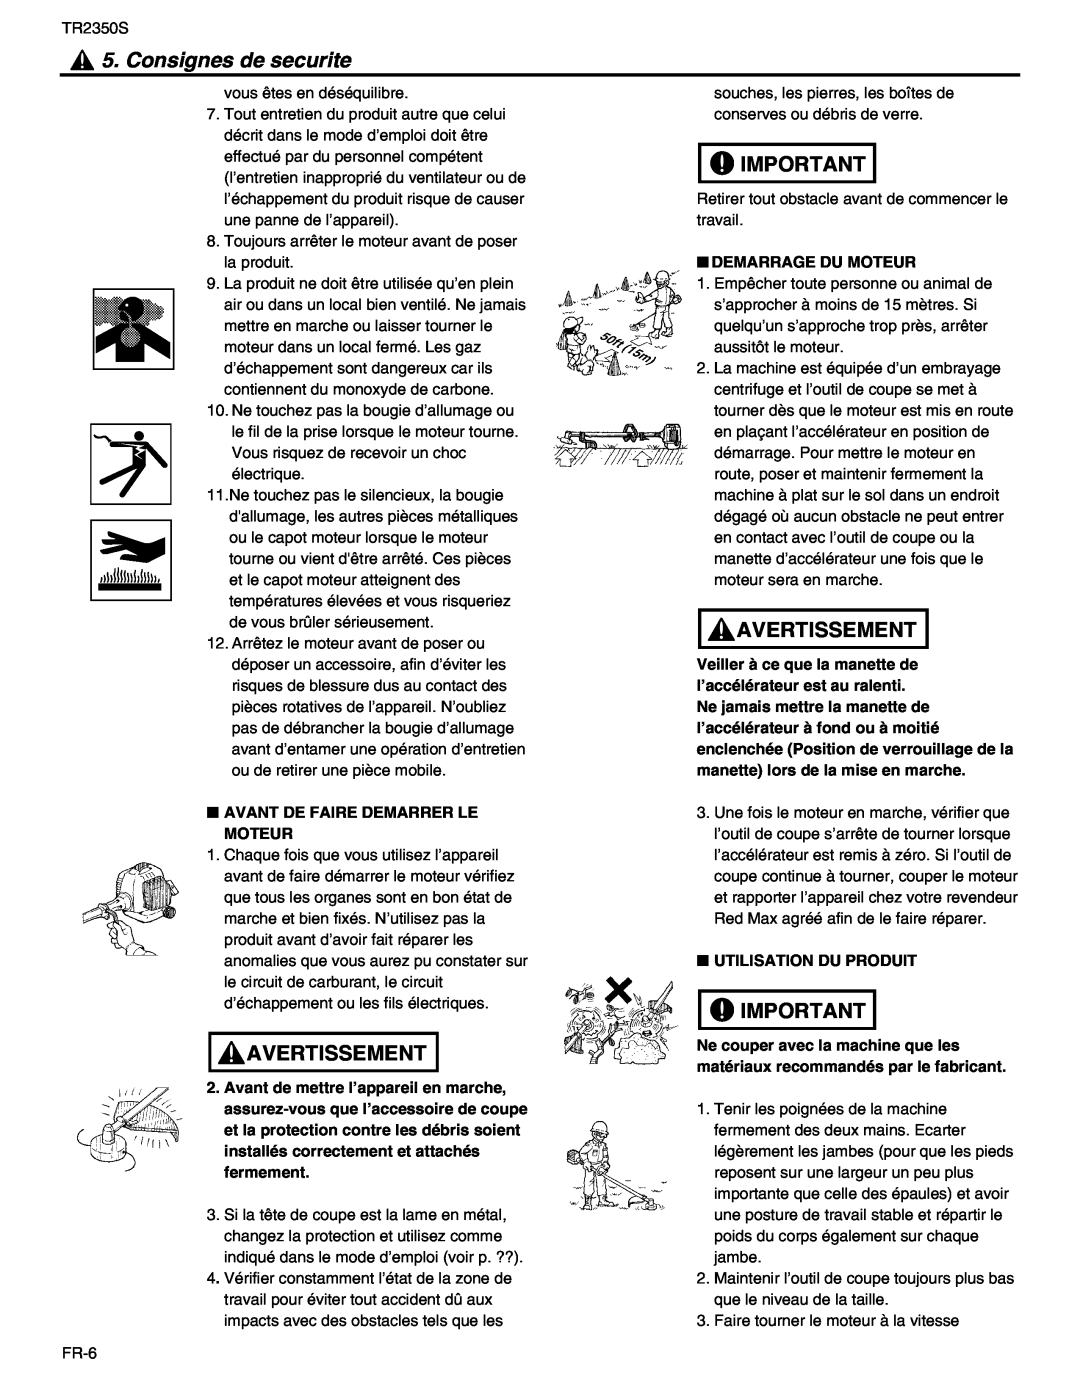 RedMax TR2350S manual Consignes de securite, Avertissement, Avant De Faire Demarrer Le Moteur, Demarrage Du Moteur 